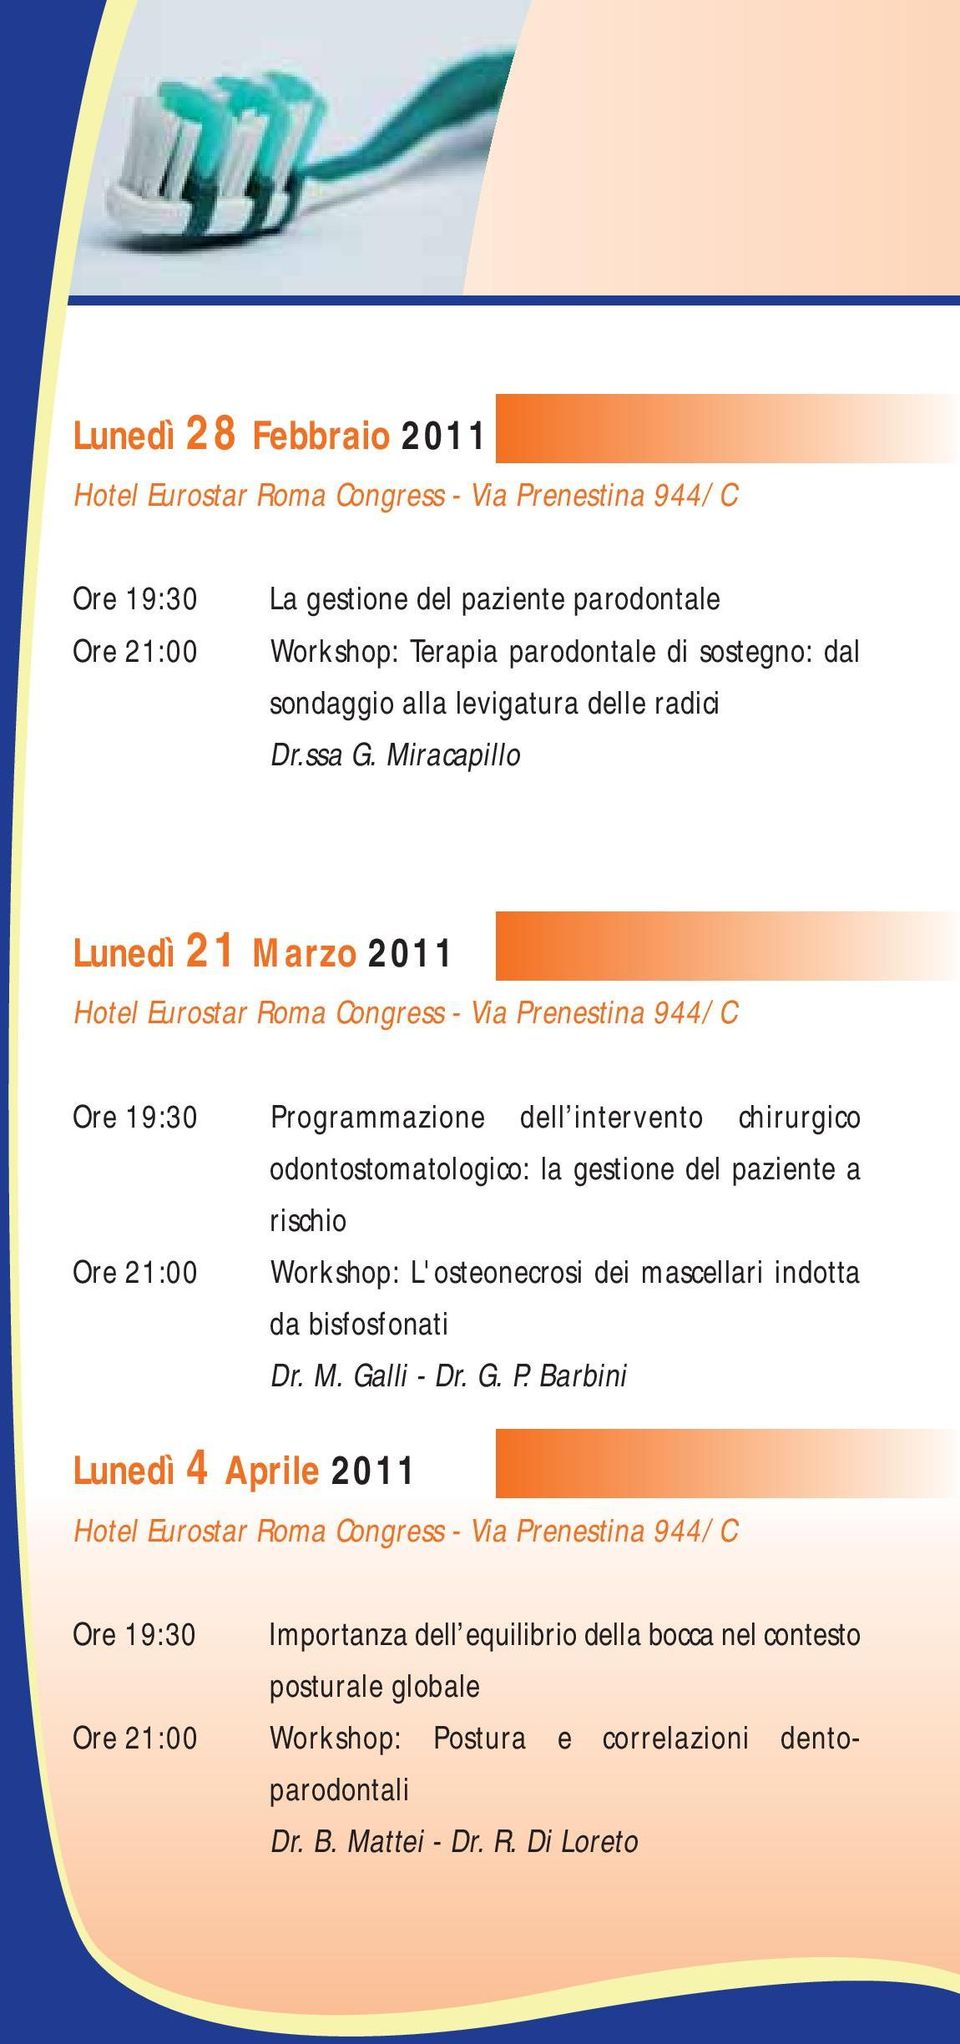 Miracapillo Lunedì 21 Marzo 2011 Programmazione dell intervento chirurgico odontostomatologico: la gestione del paziente a rischio